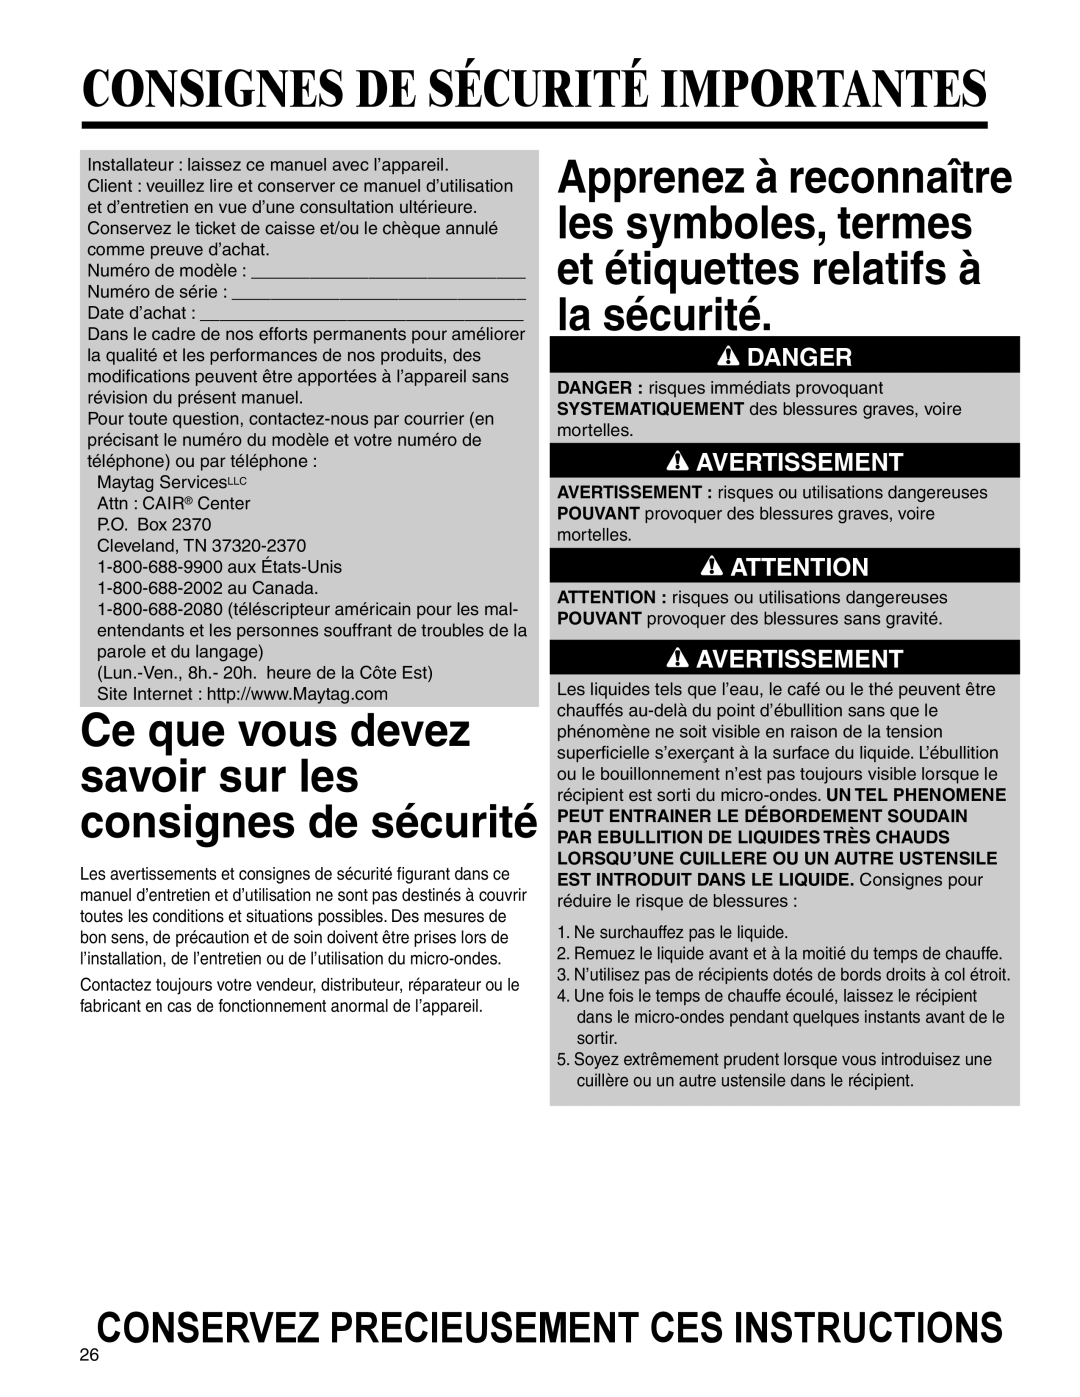 Maytag UMC5200 BCB/W/S Consignes De Sécurité Importantes, Conservez Precieusement Ces Instructions, Avertissement, Danger 